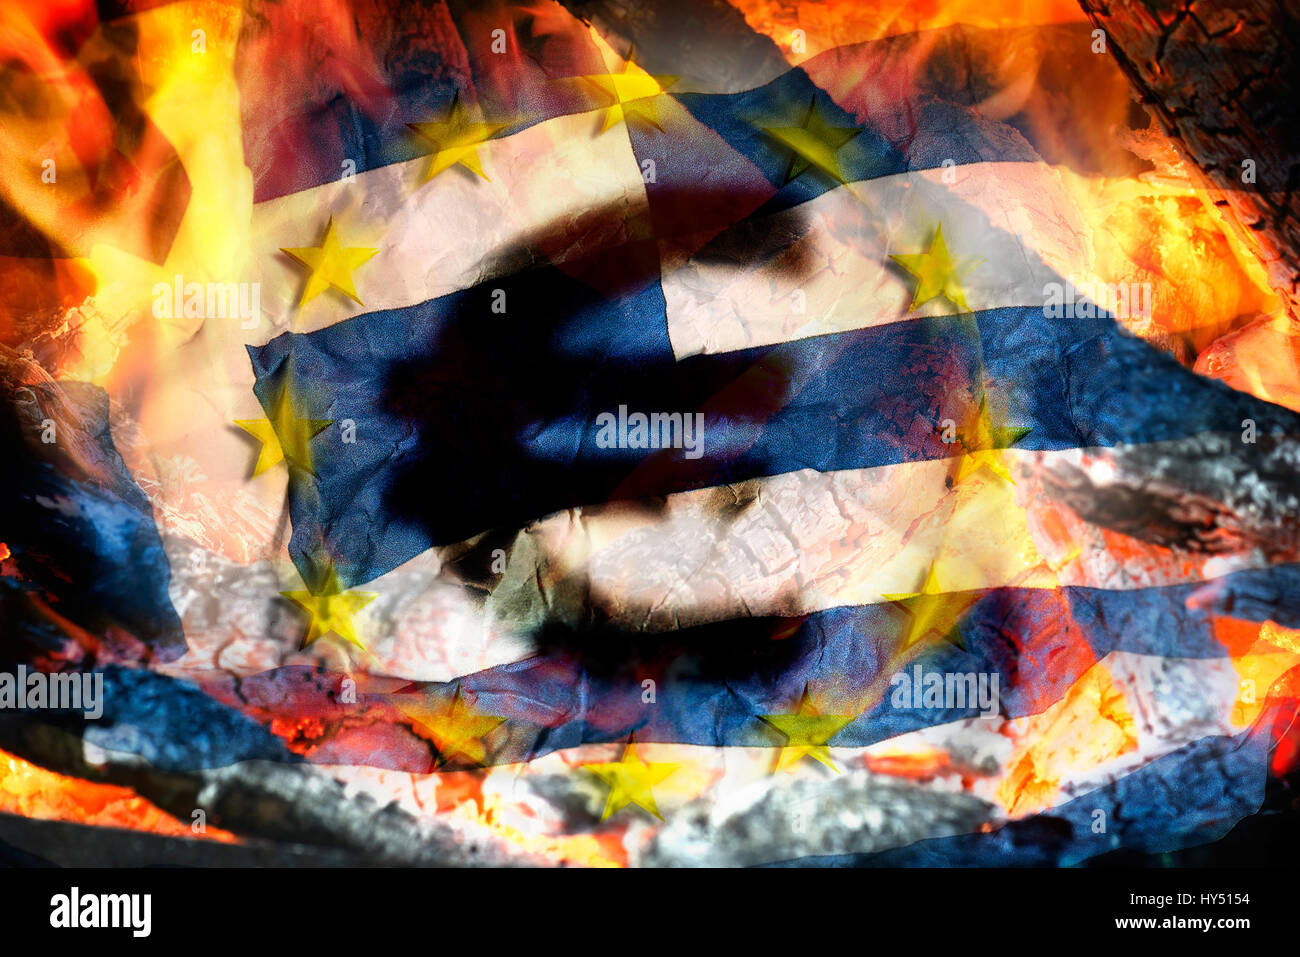 Greek flag, flames and eurosigns, symbolic photo debt quarrel, Griechische Fahne, Flammen und Eurozeichen, Symbolfoto Schuldenstreit Stock Photo